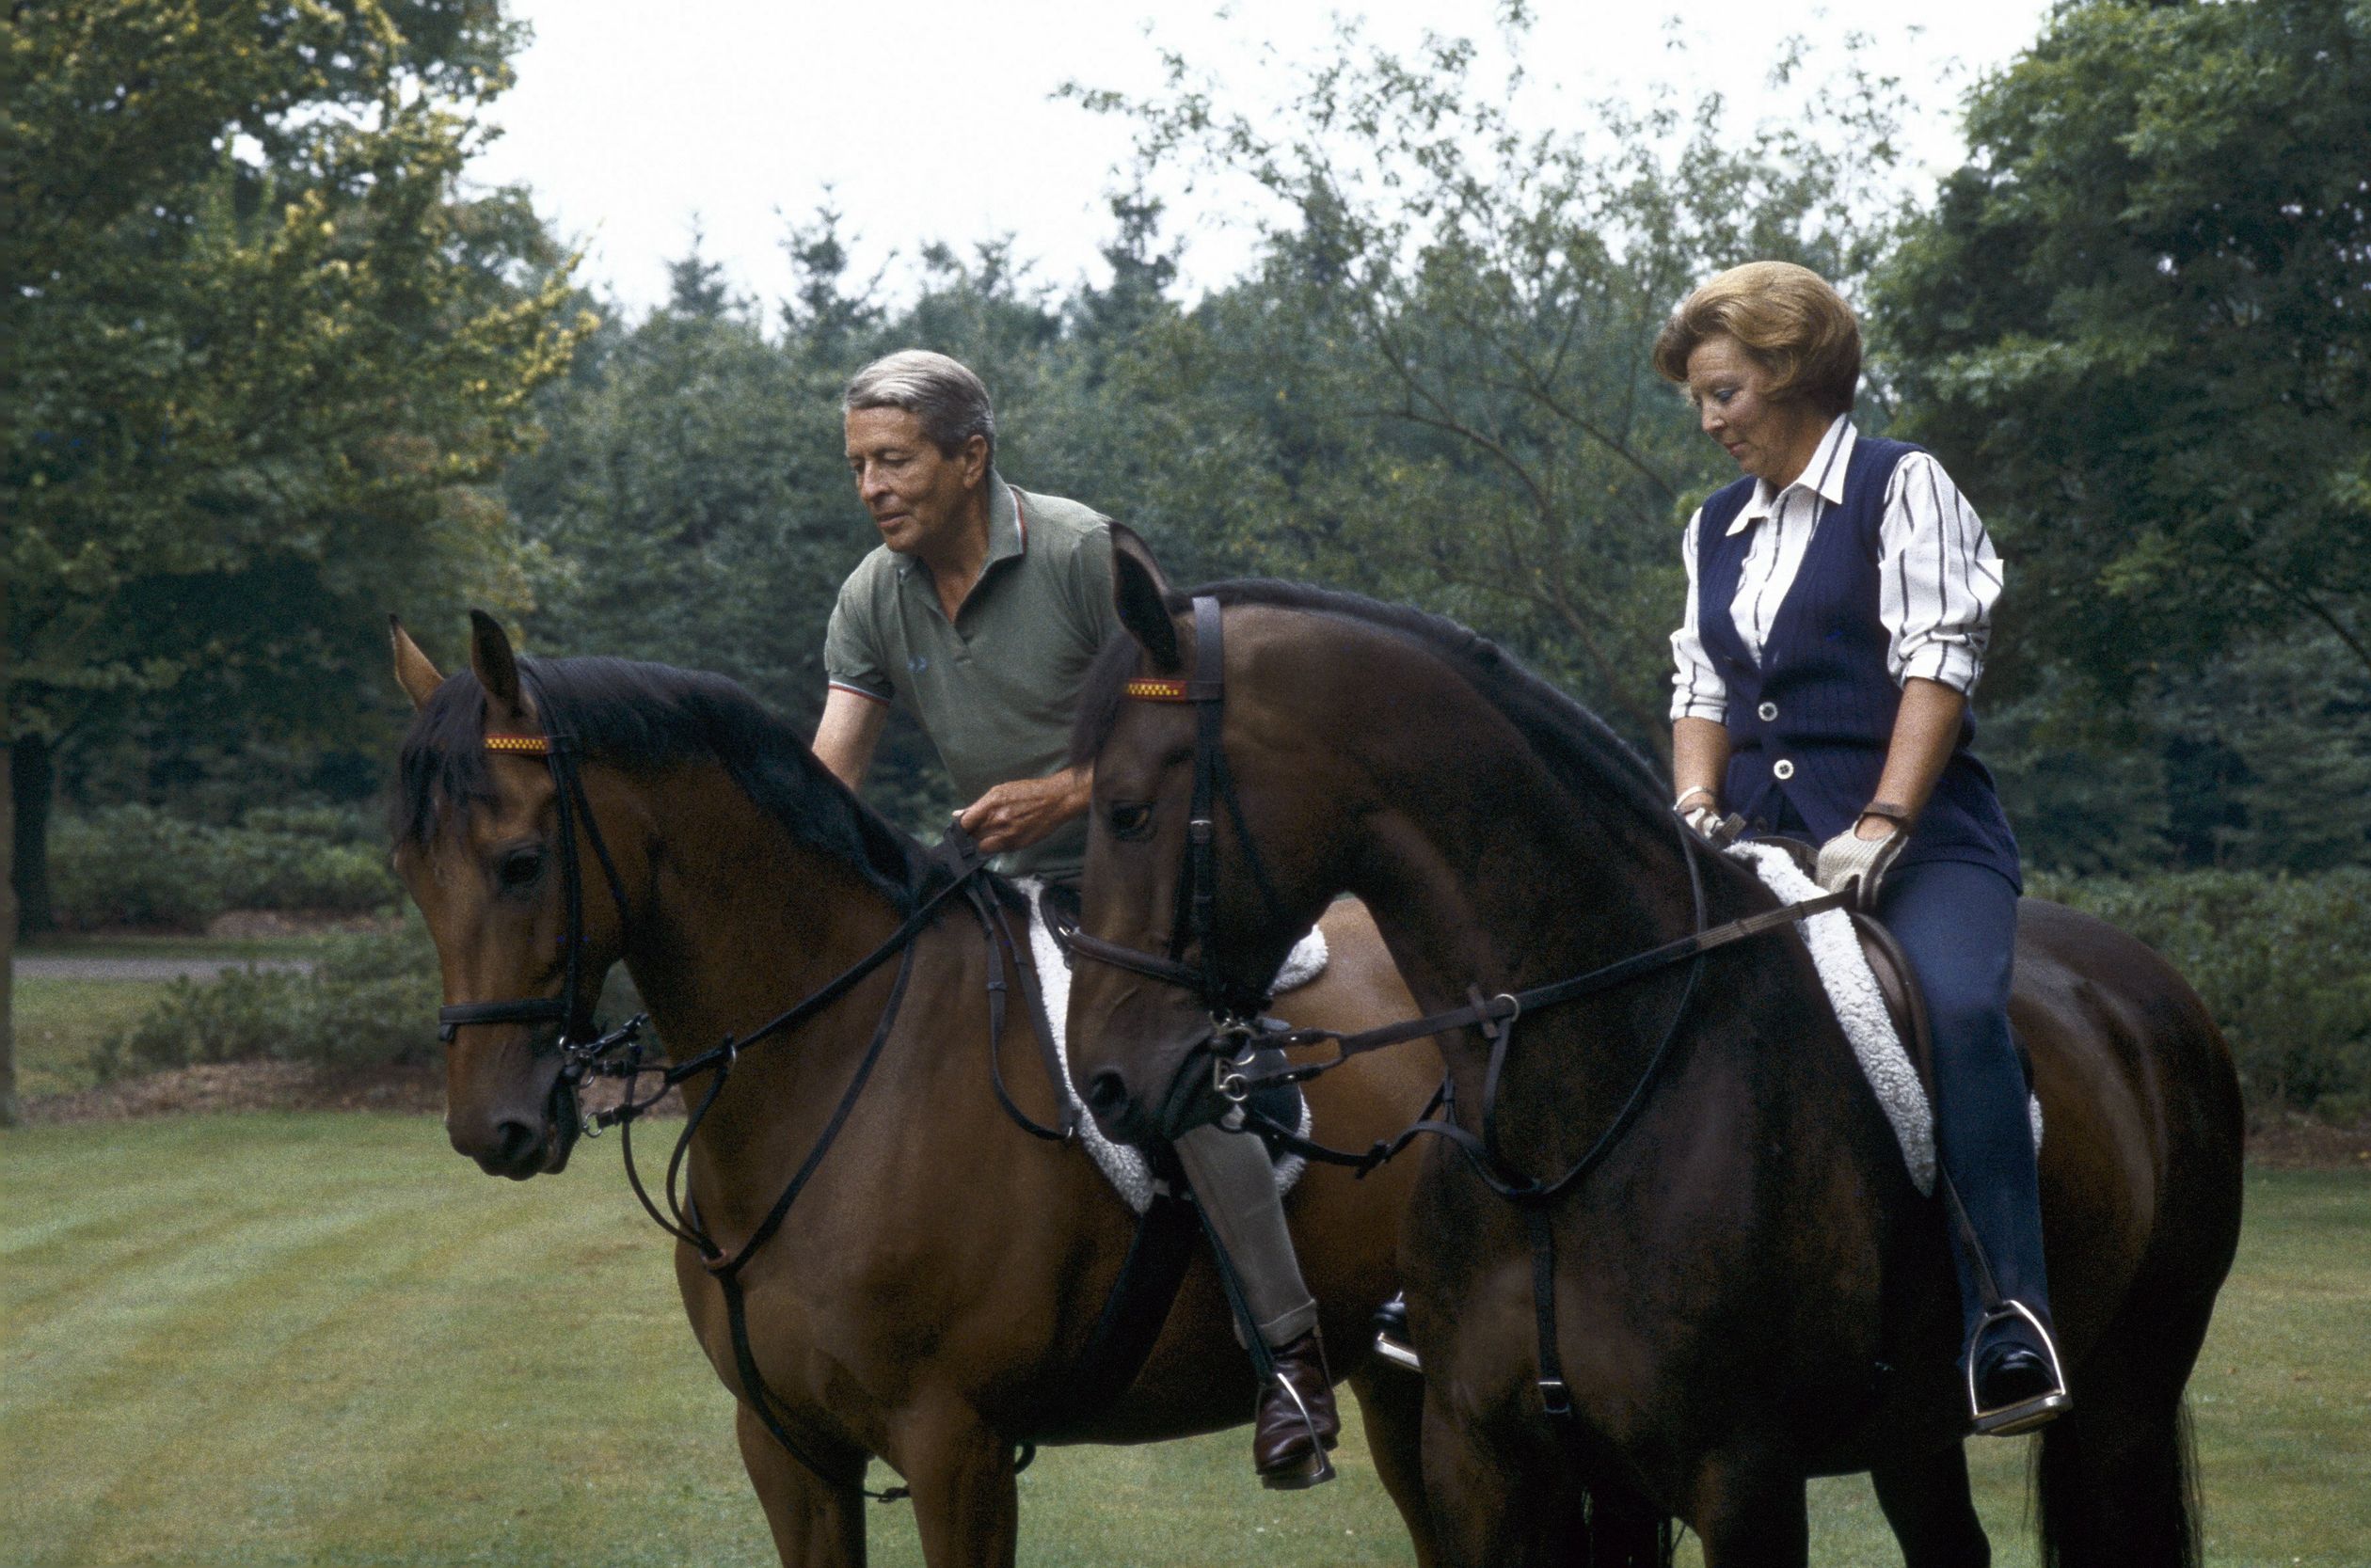 1989: Beatrix en Claus rijden paard in de bossen van Het Loo.